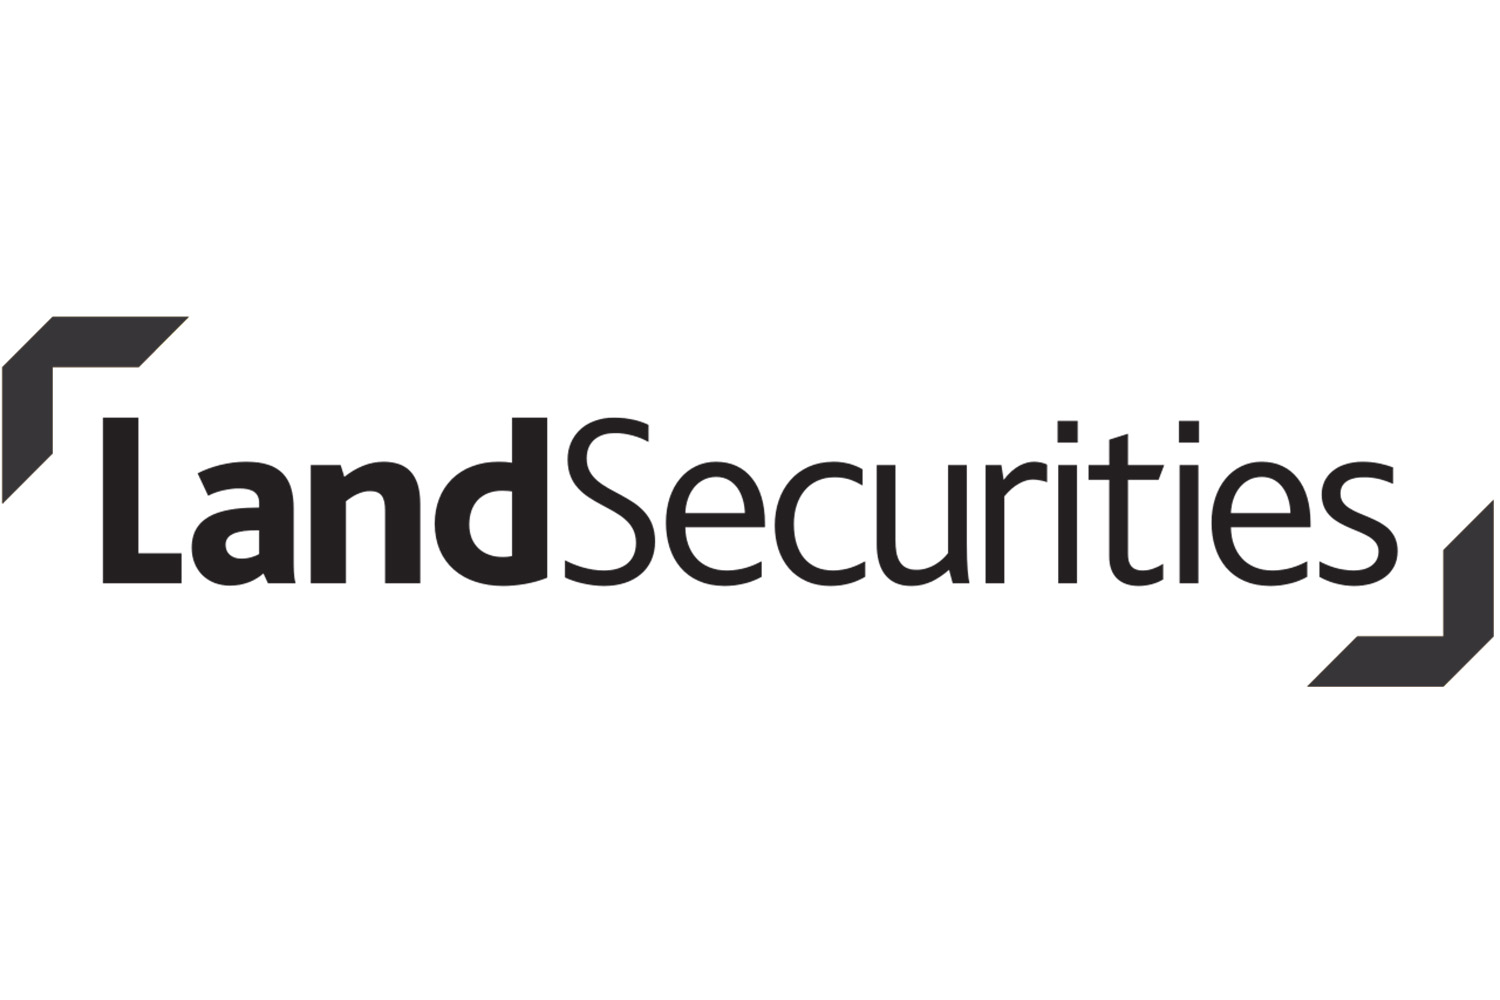 Land Securities.jpg